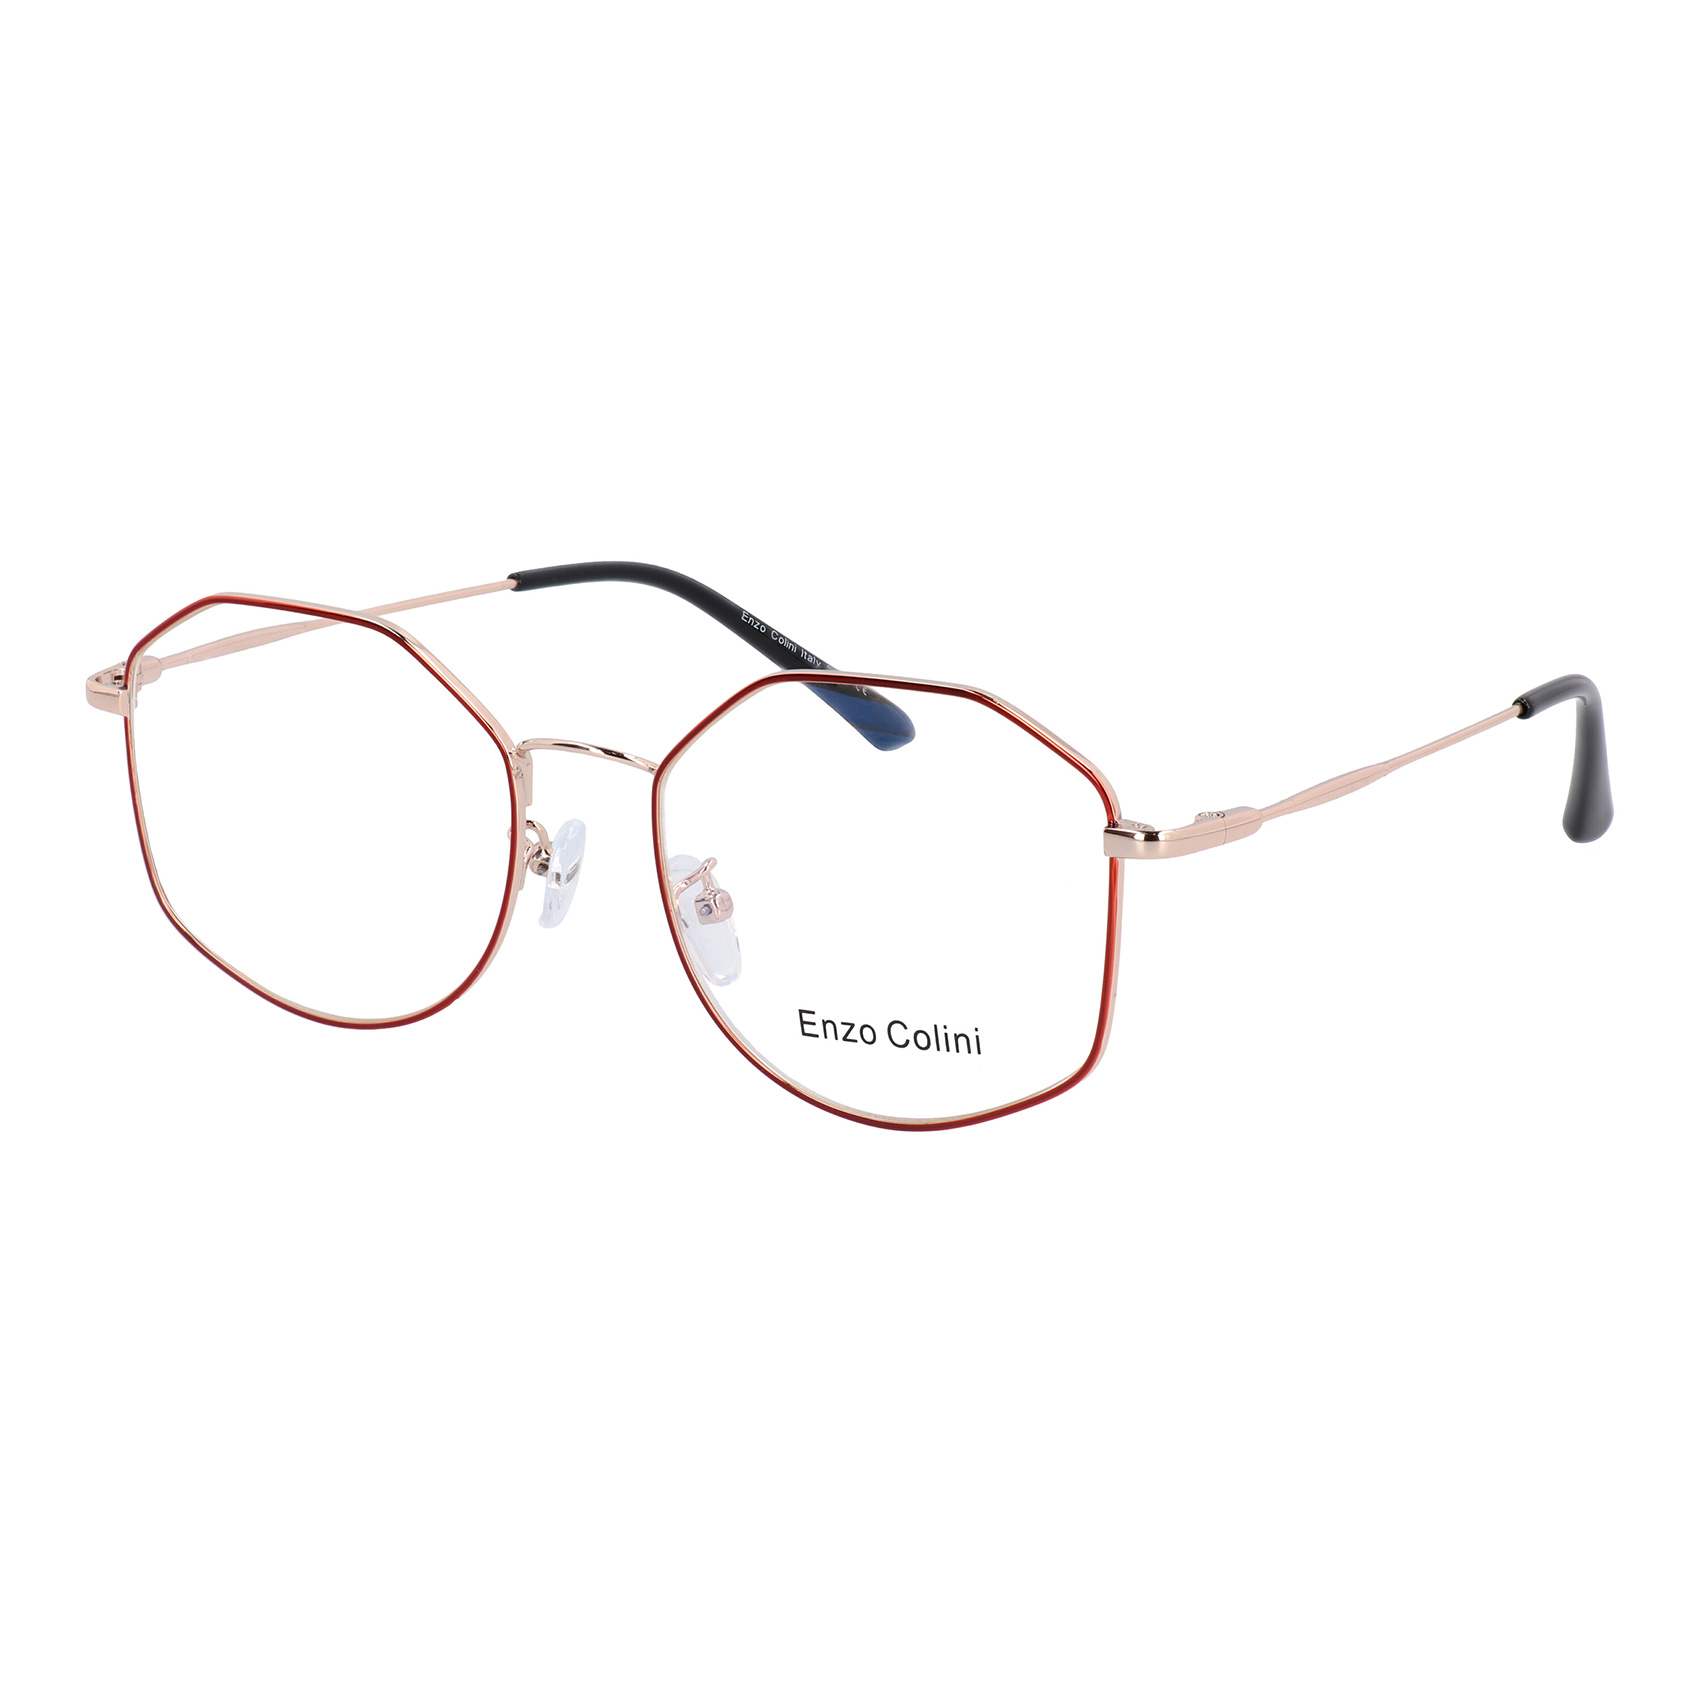 P70045C03 - Enzo Colini Eyewear - Oprawy Okularowe